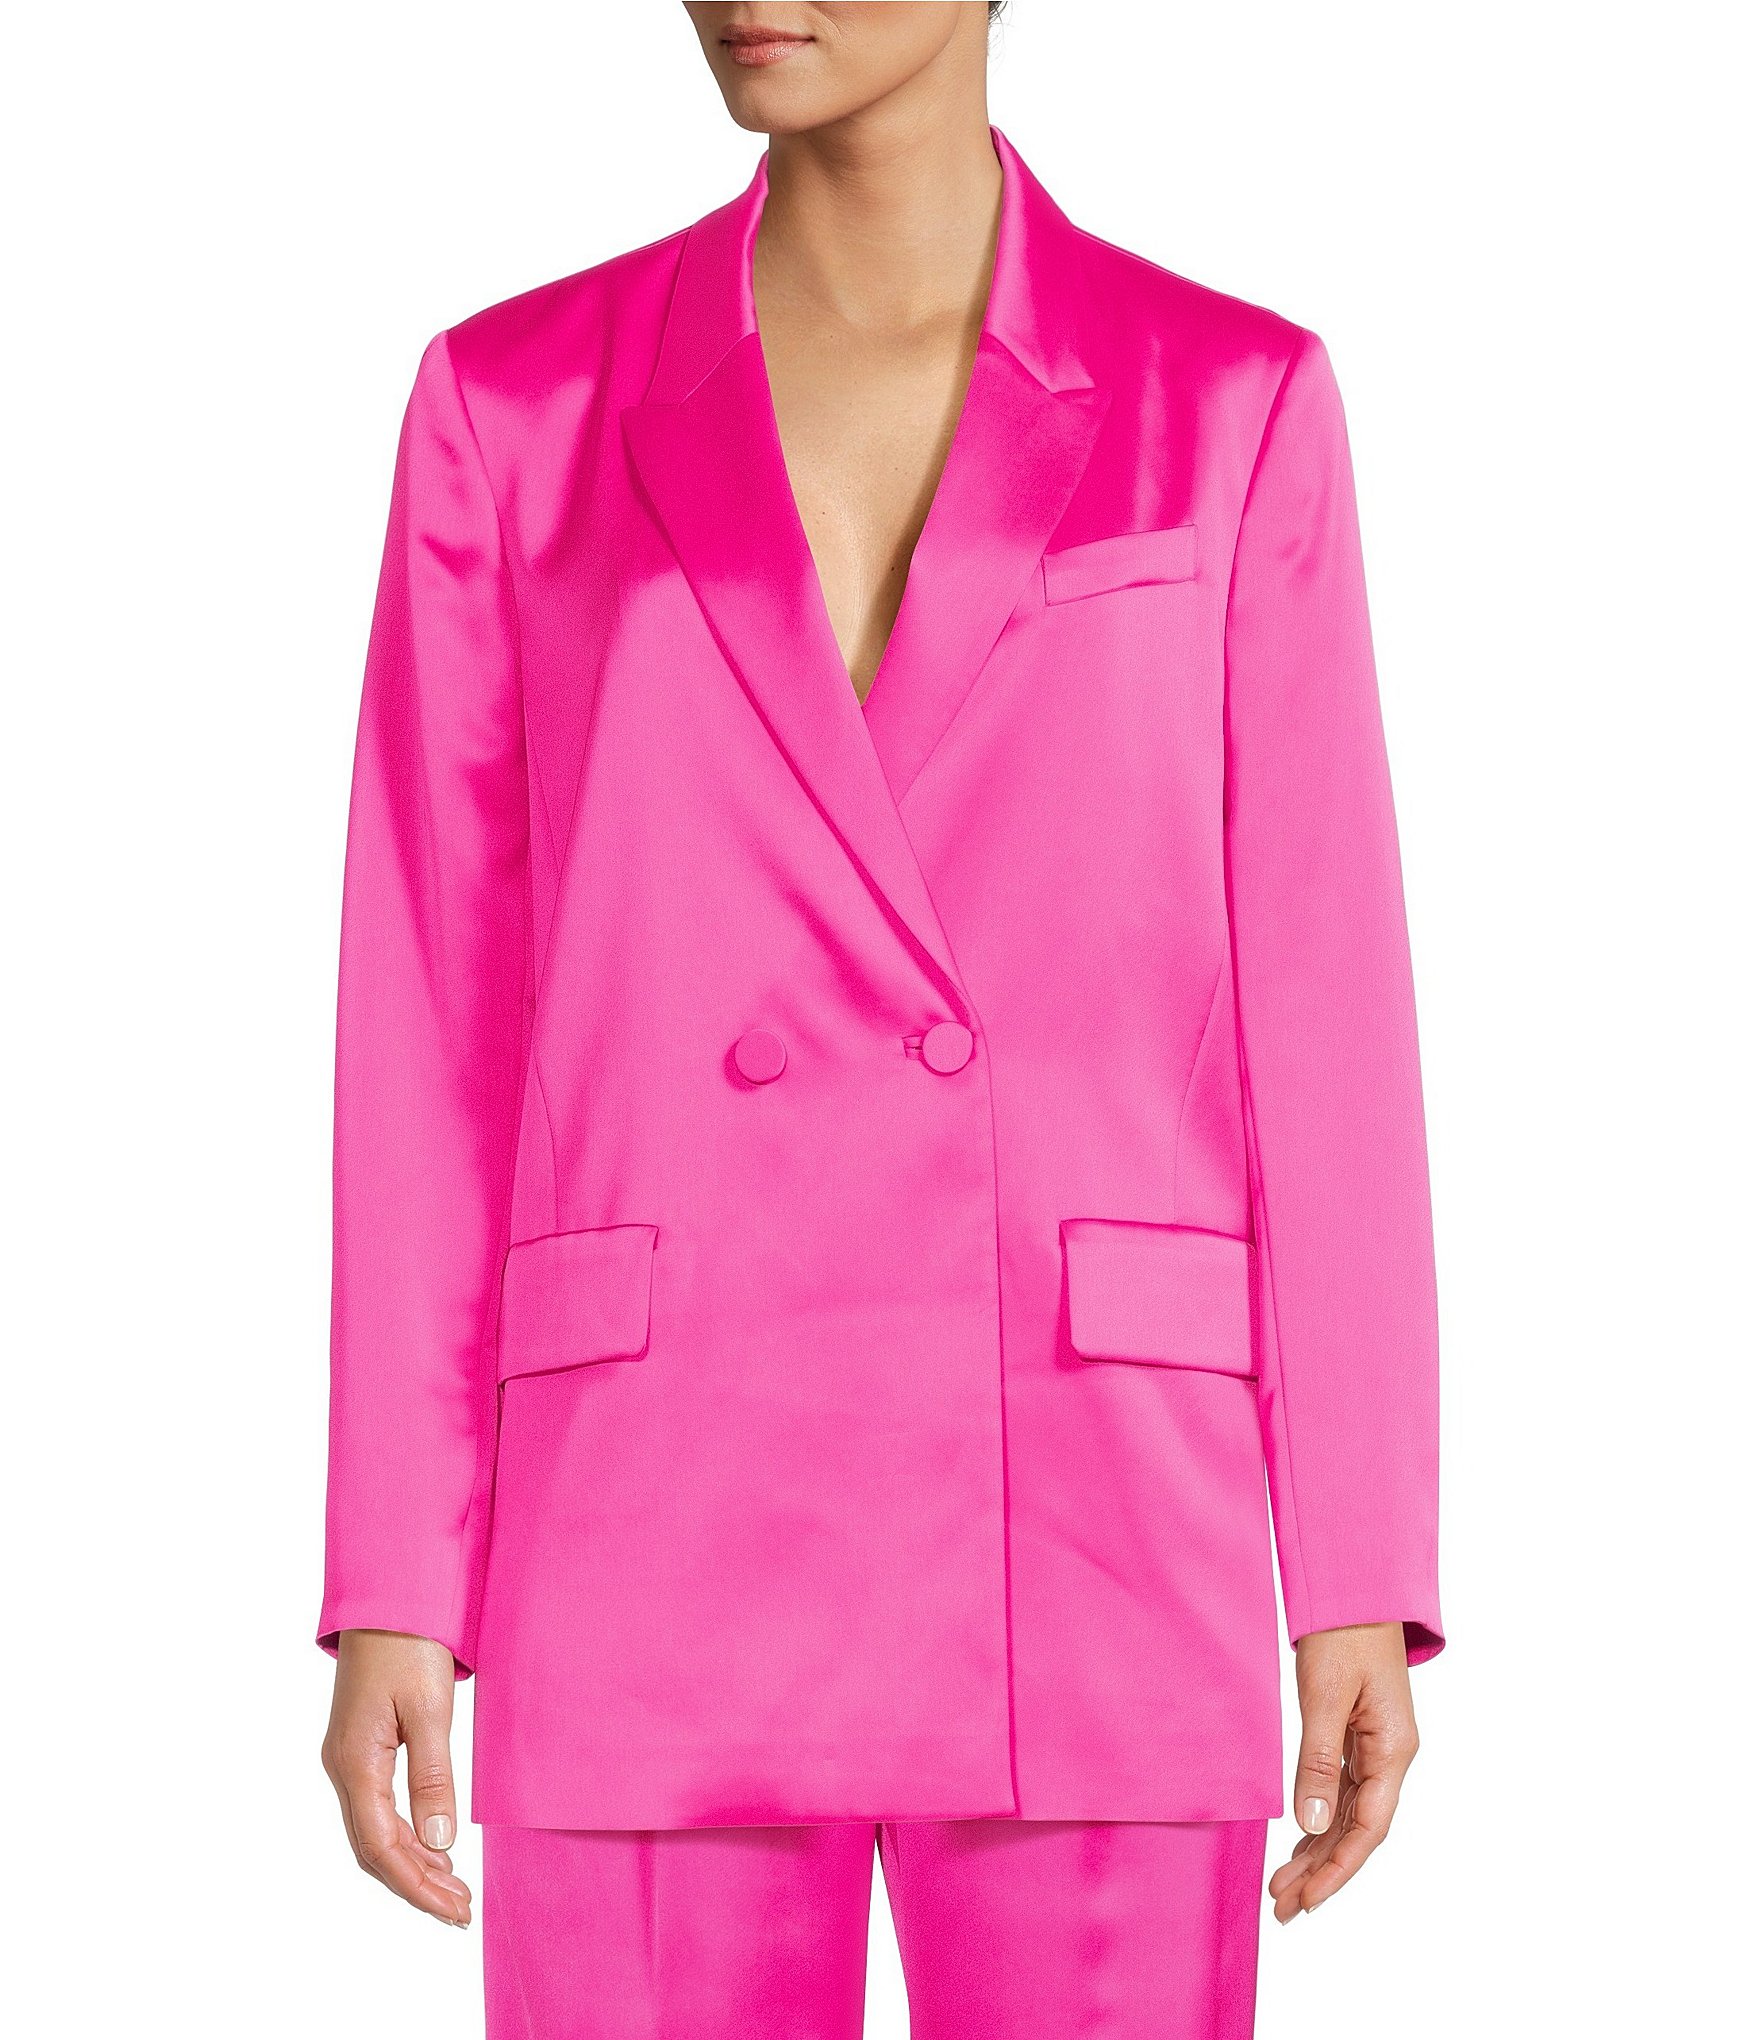 MELANI suit powder pink pink